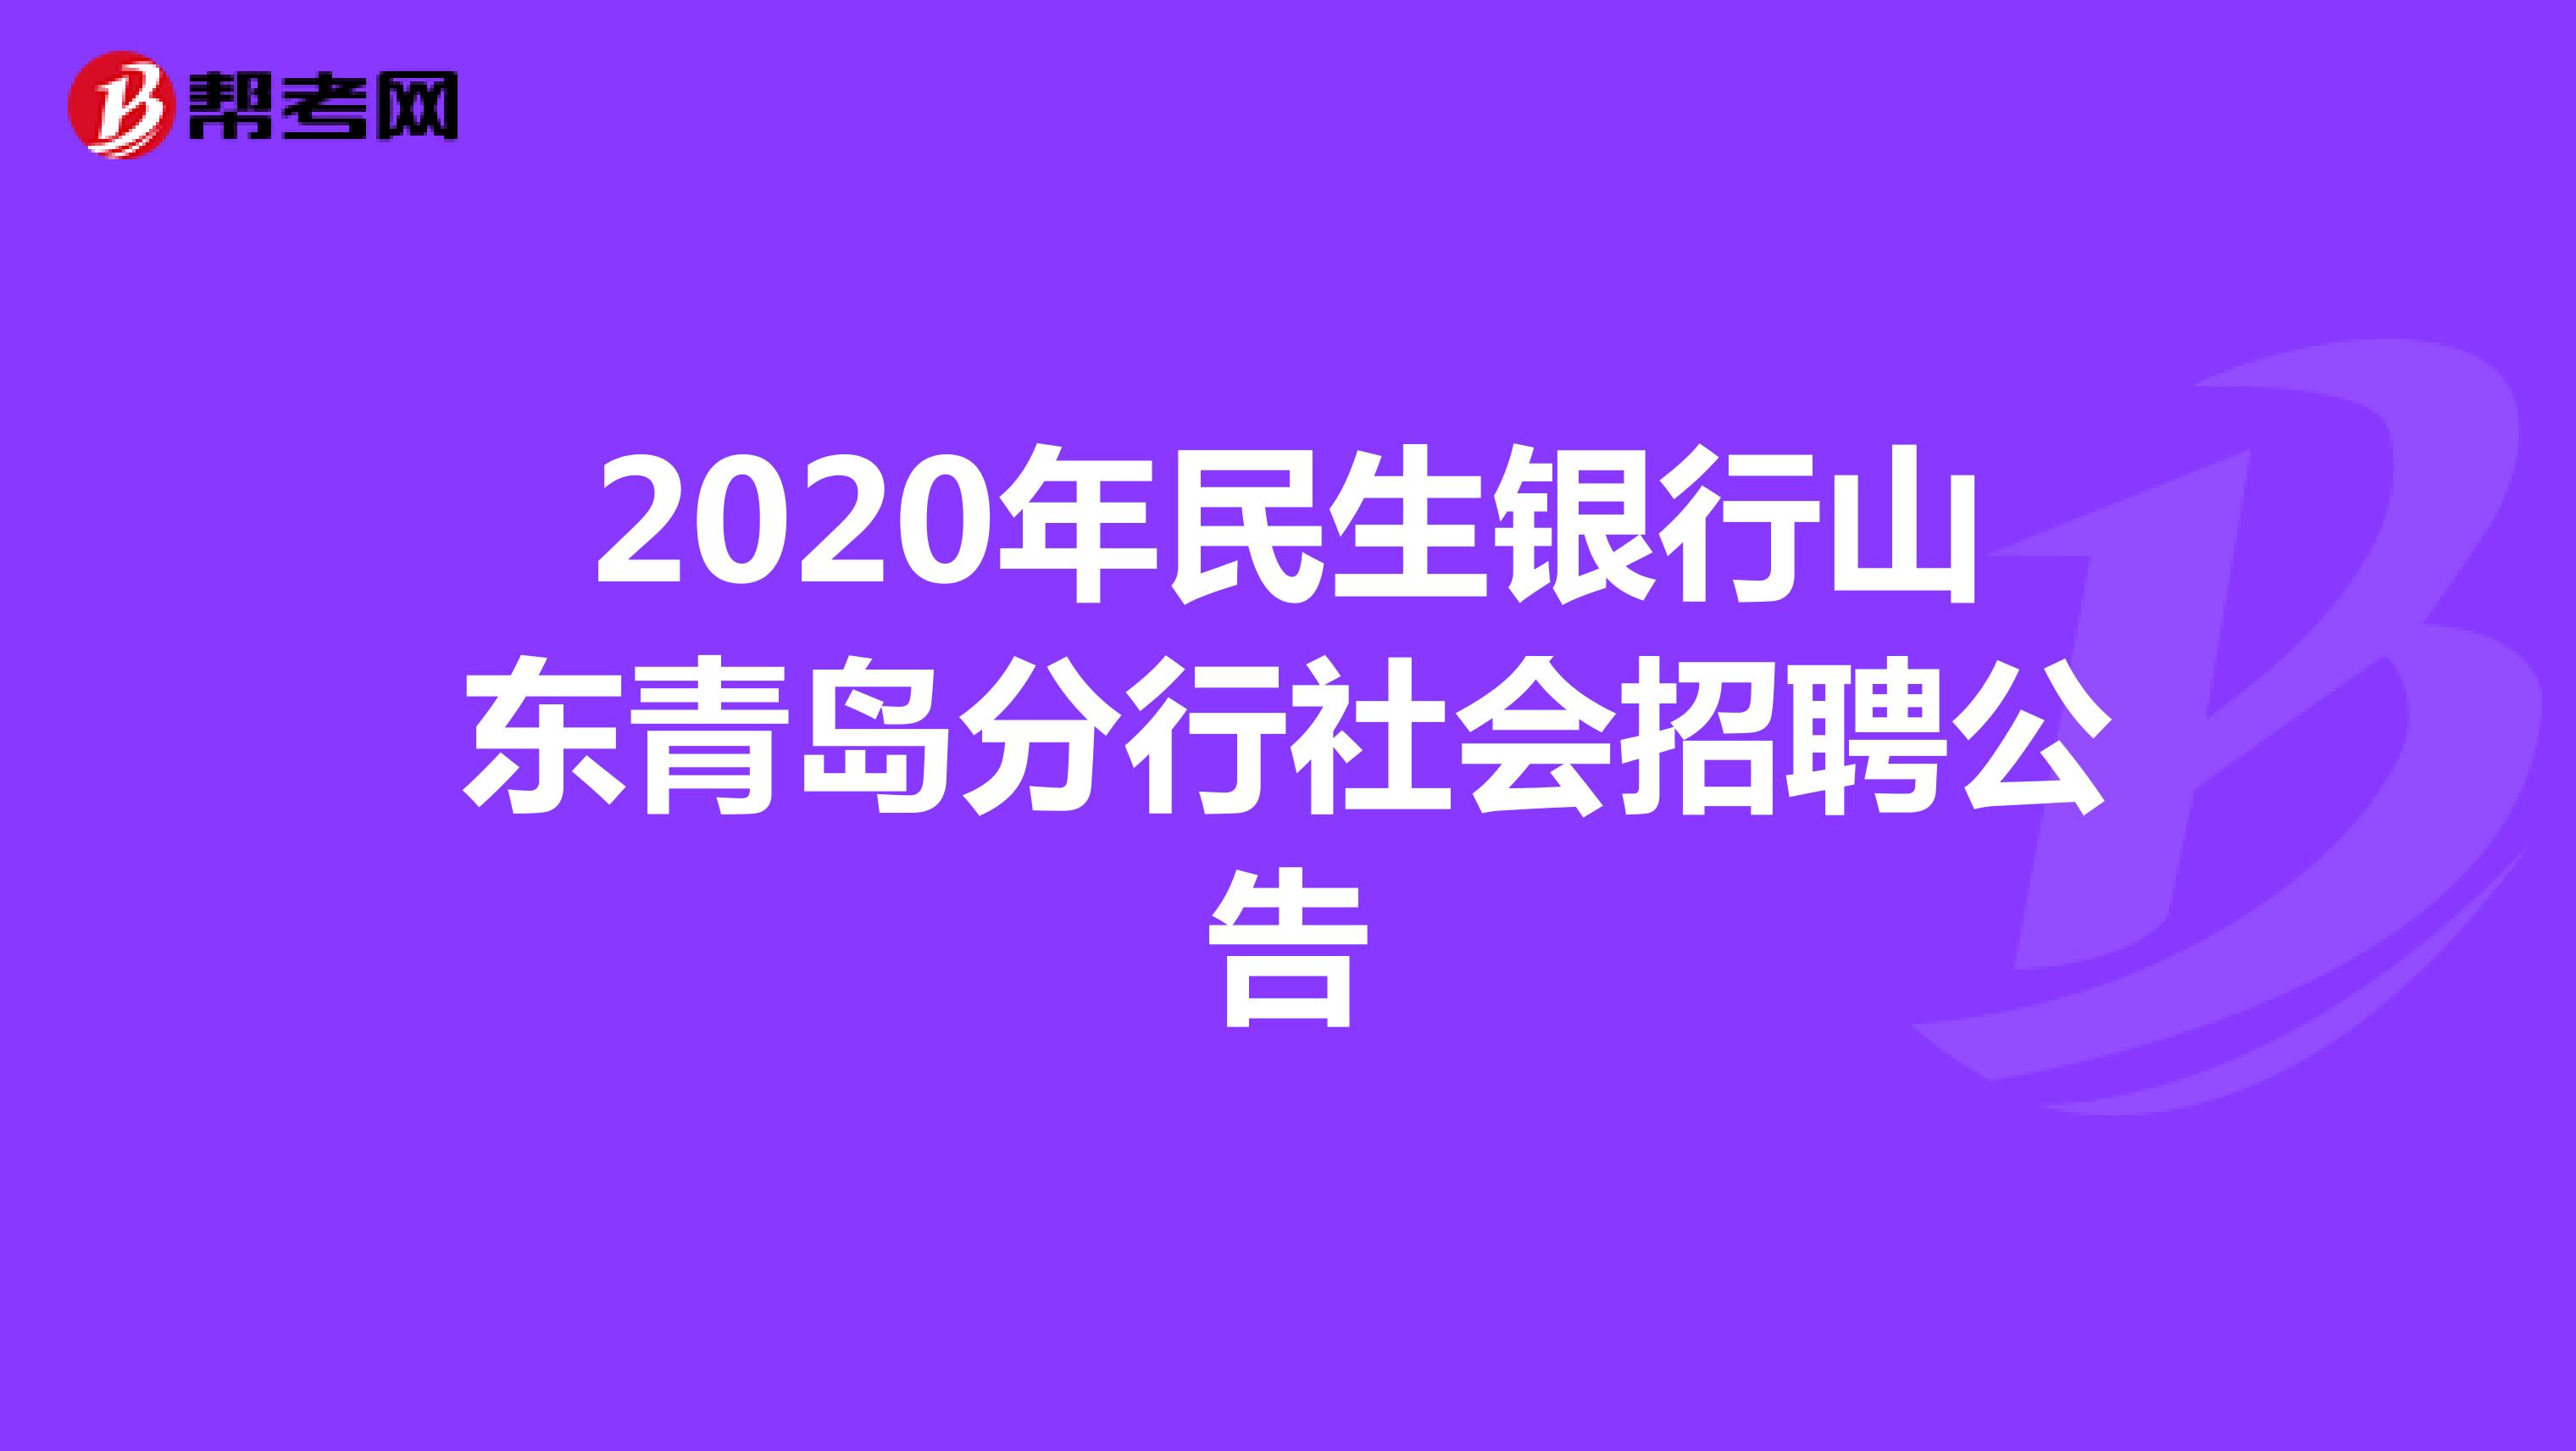 2020年民生银行山东青岛分行社会招聘公告